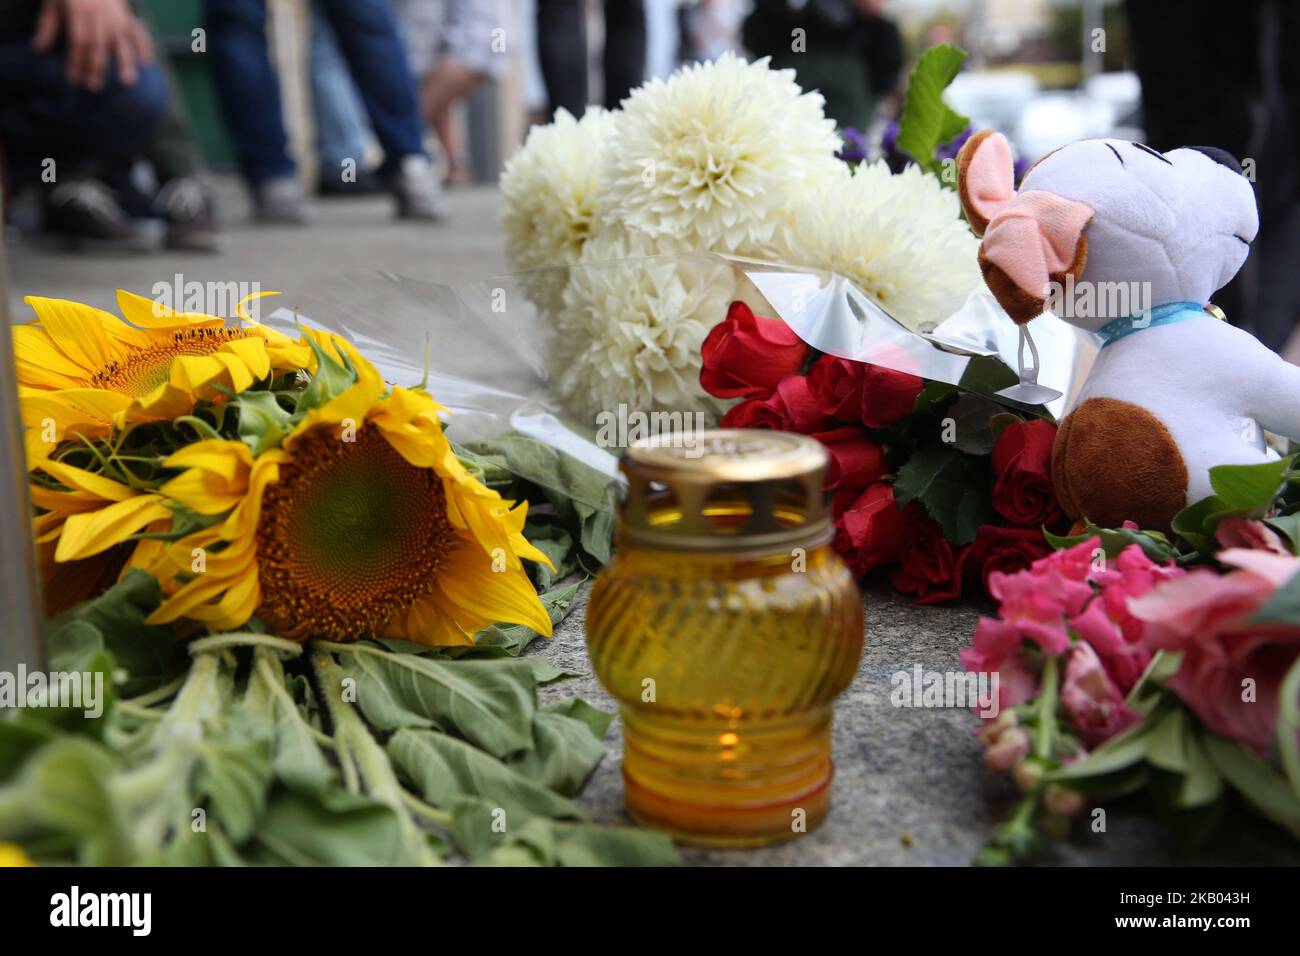 Am 17. Juli 2018 legen Menschen vor der niederländischen Botschaft Blumen und Spielzeug ab. Die Ukraine trauert um die Opfer des Zivilluftfahrtvorstandes MH-17, der 2014 über die vom Krieg zerrissene Ukraine abgeschossen wurde. (Foto von Sergii Chartschenko/NurPhoto) Stockfoto